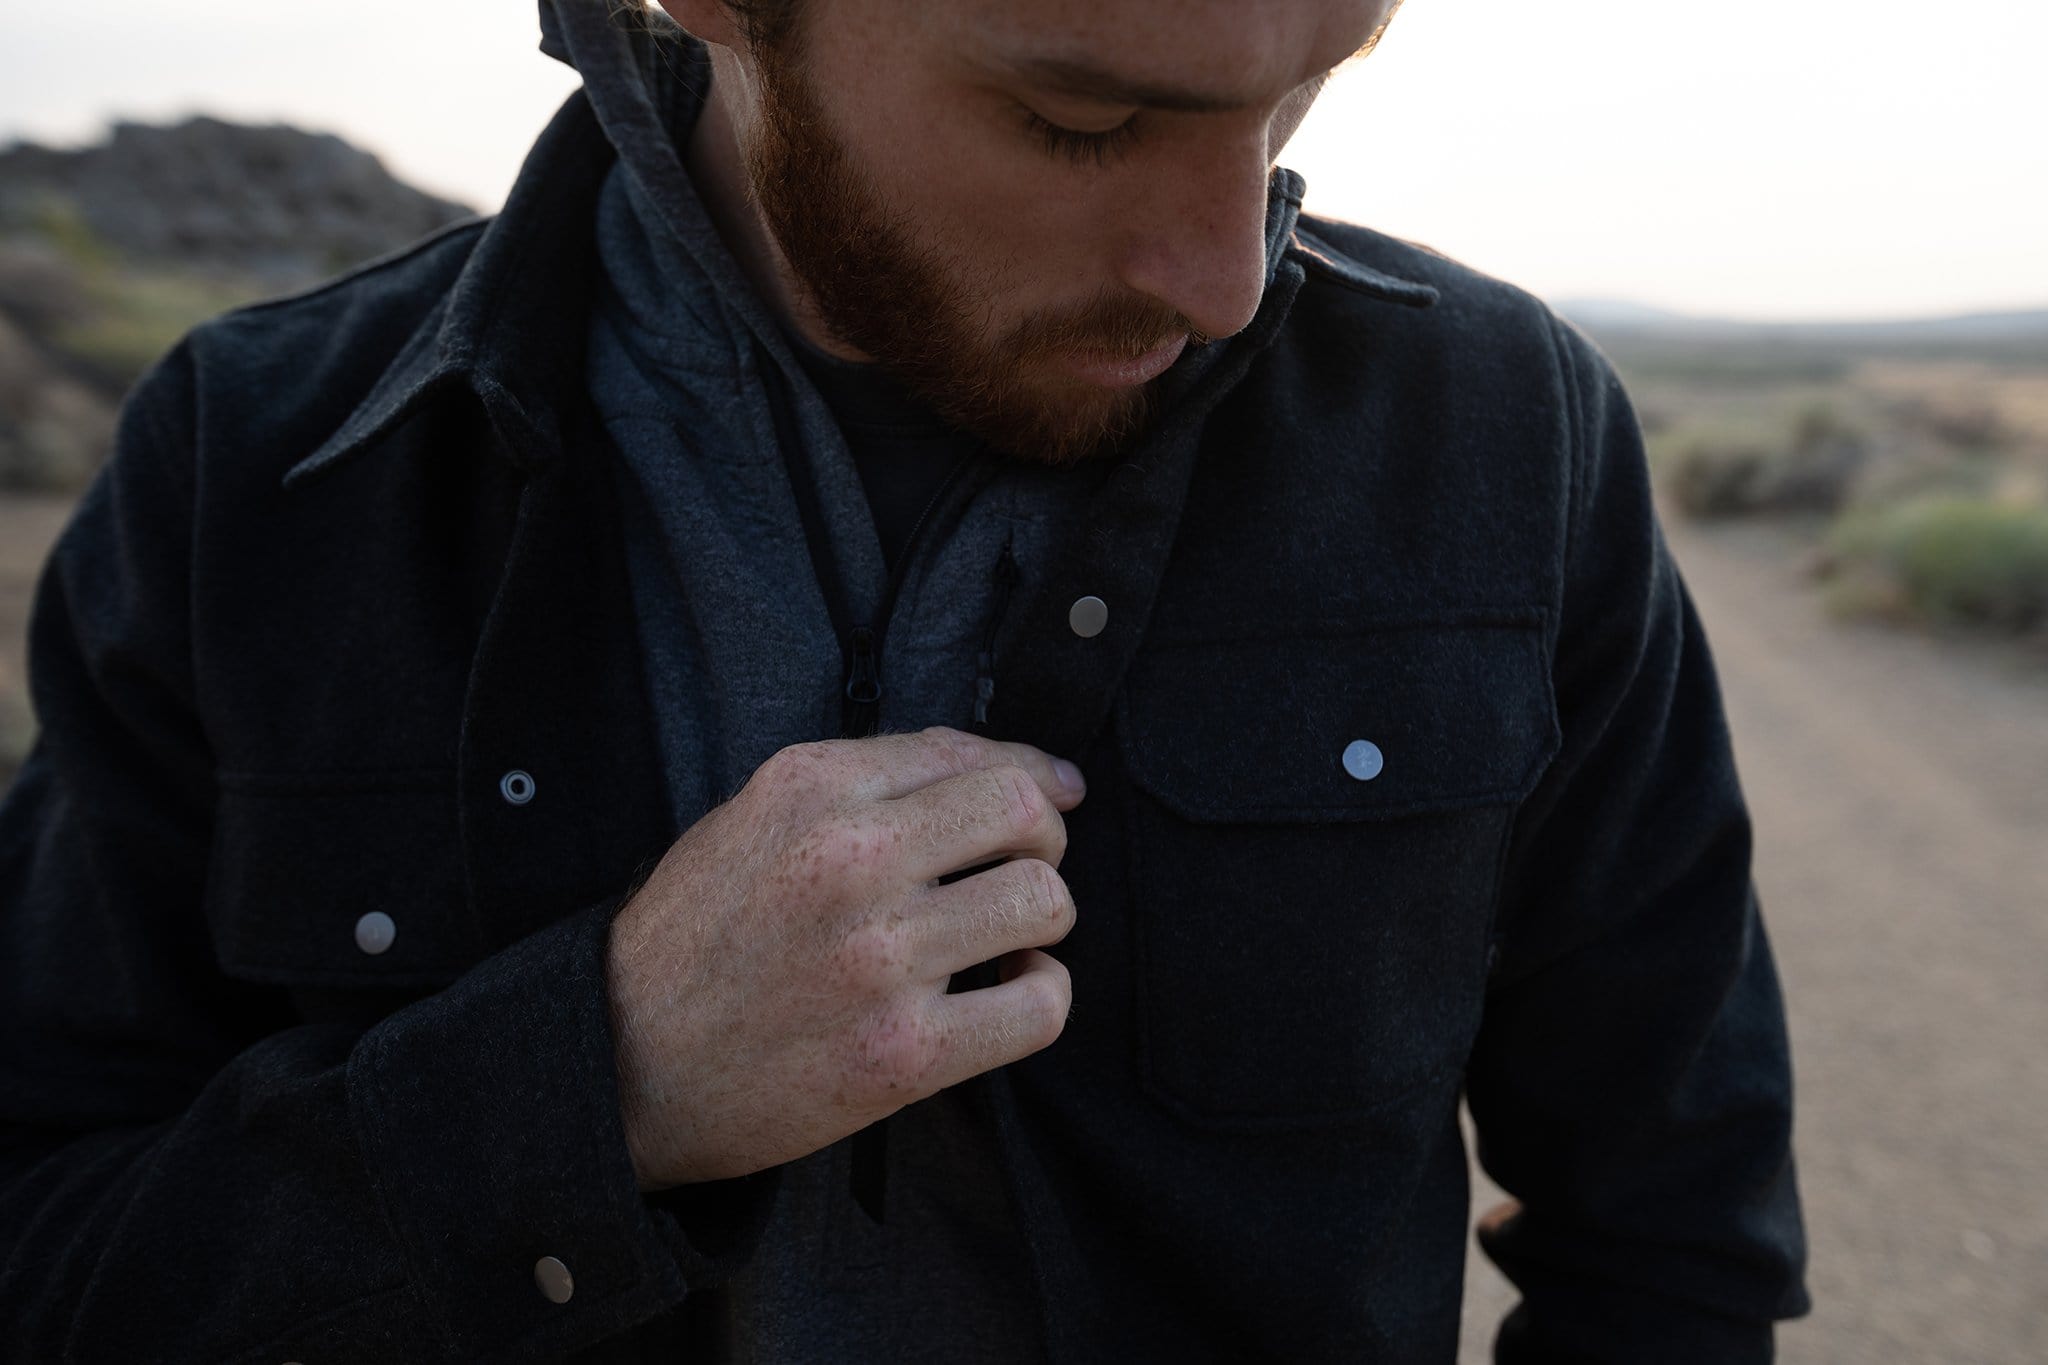 Men's Morrison Wool Flannel Shirt Jacket